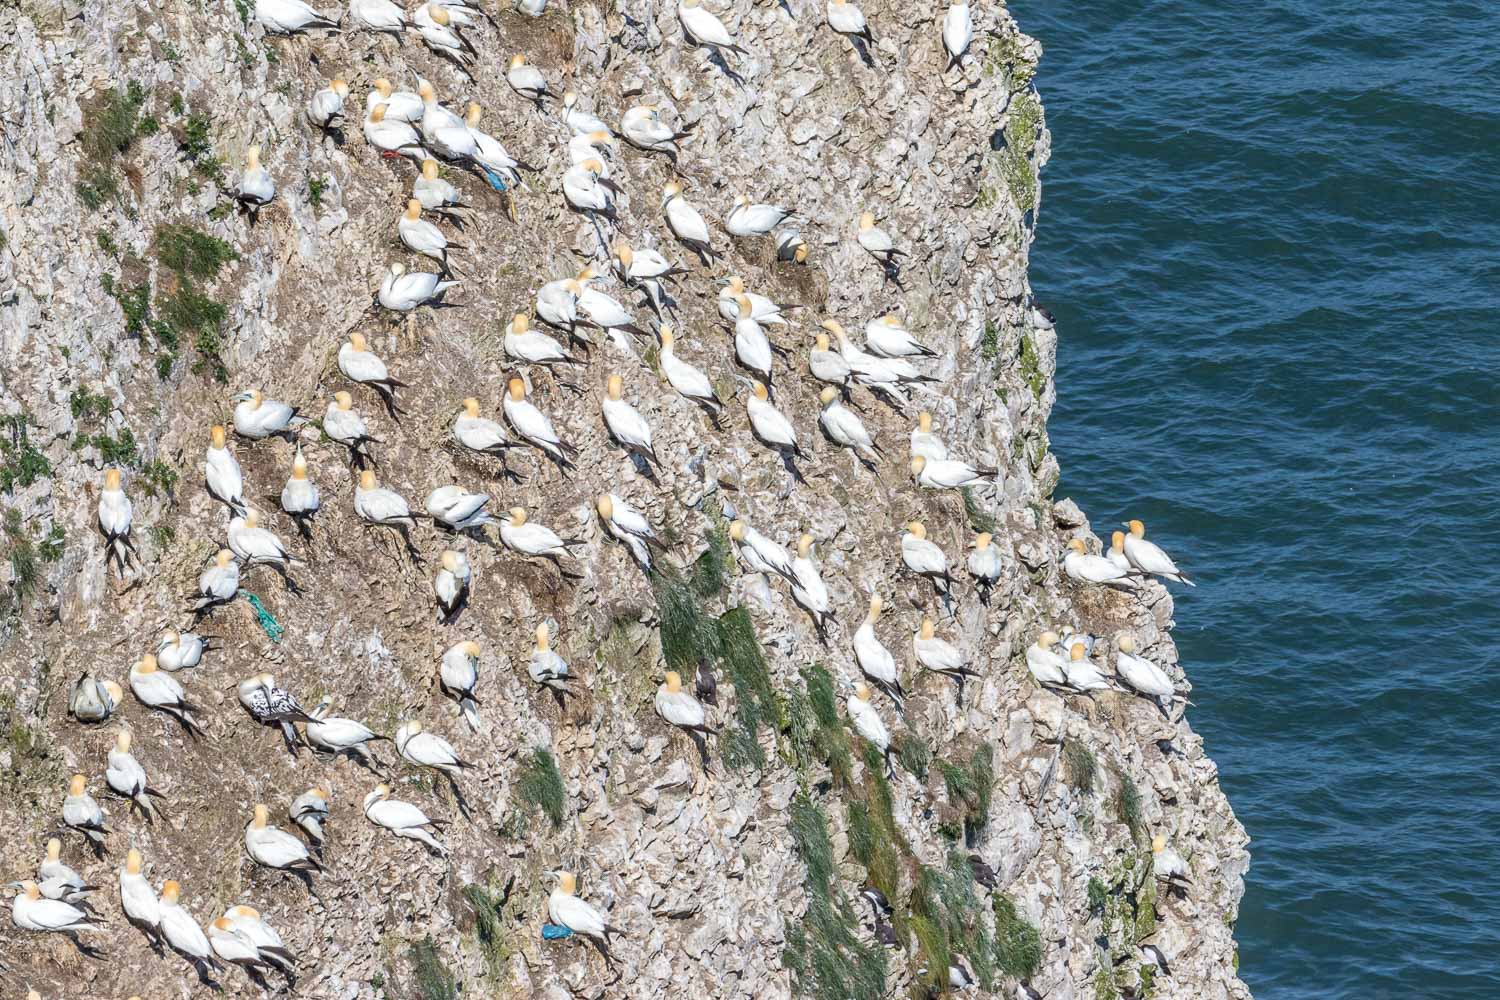 Bempton Cliffs walk, gannets